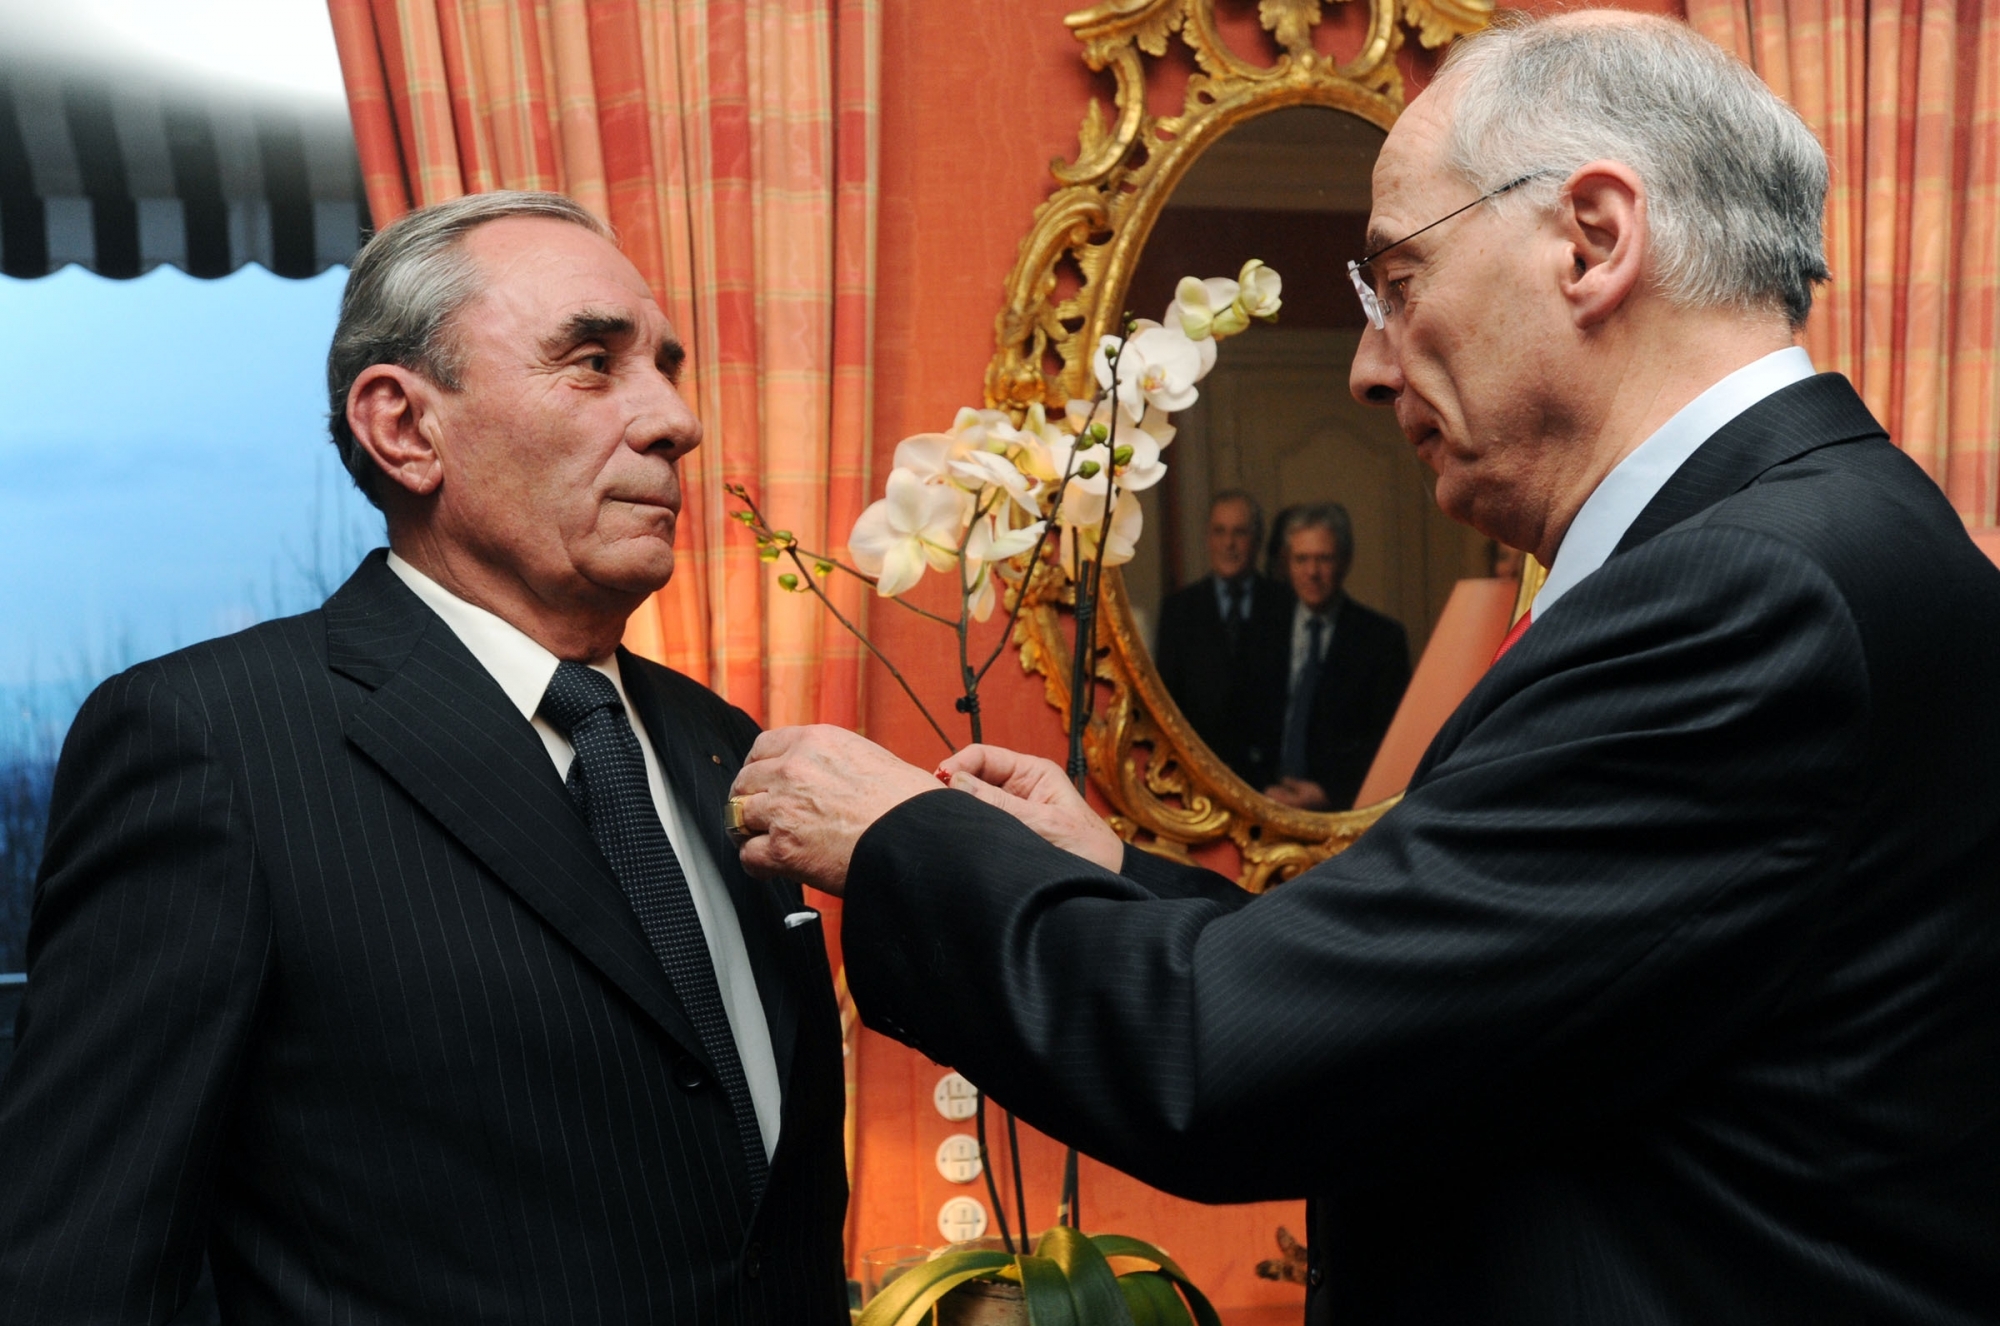 Le 4 février 2010, Jean-Paul Genre (à g.) recevait la médaille de Chevalier de la légion d'honneur, des mains d'Alain Catta, ambassadeur de France en Suisse.